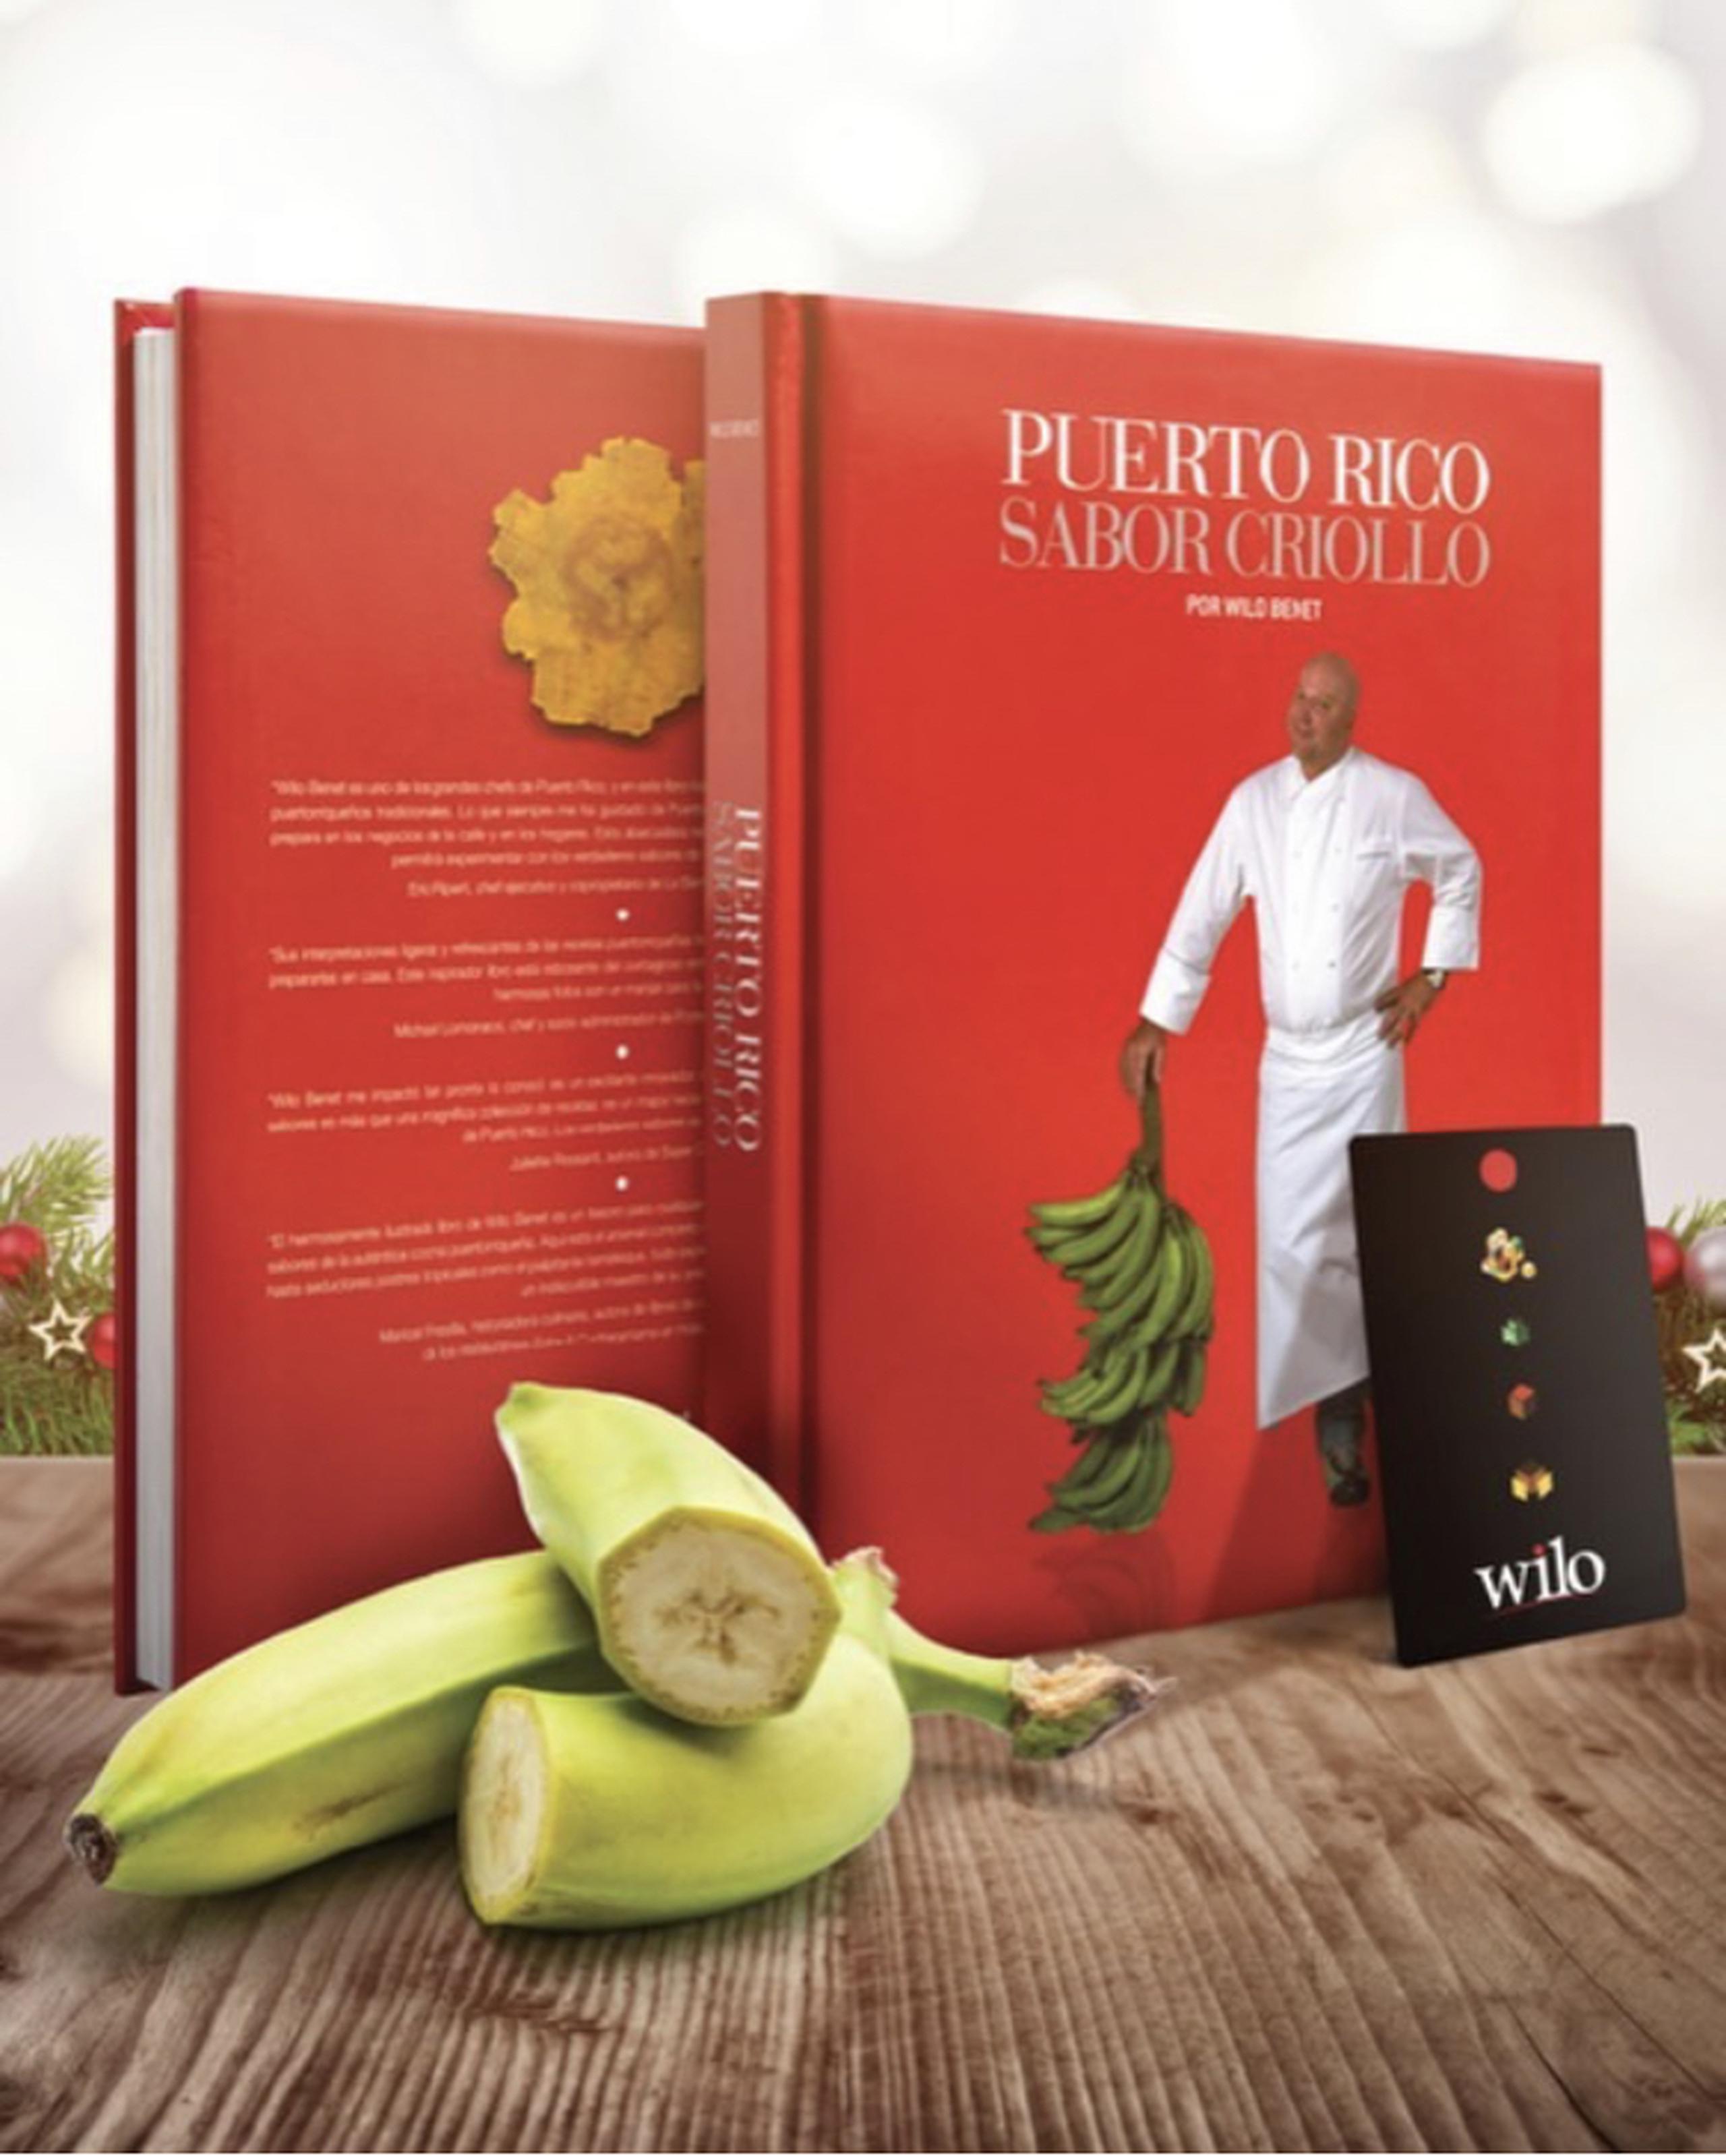 El chef es el creador del libro “Puerto Rico sabor criollo”.